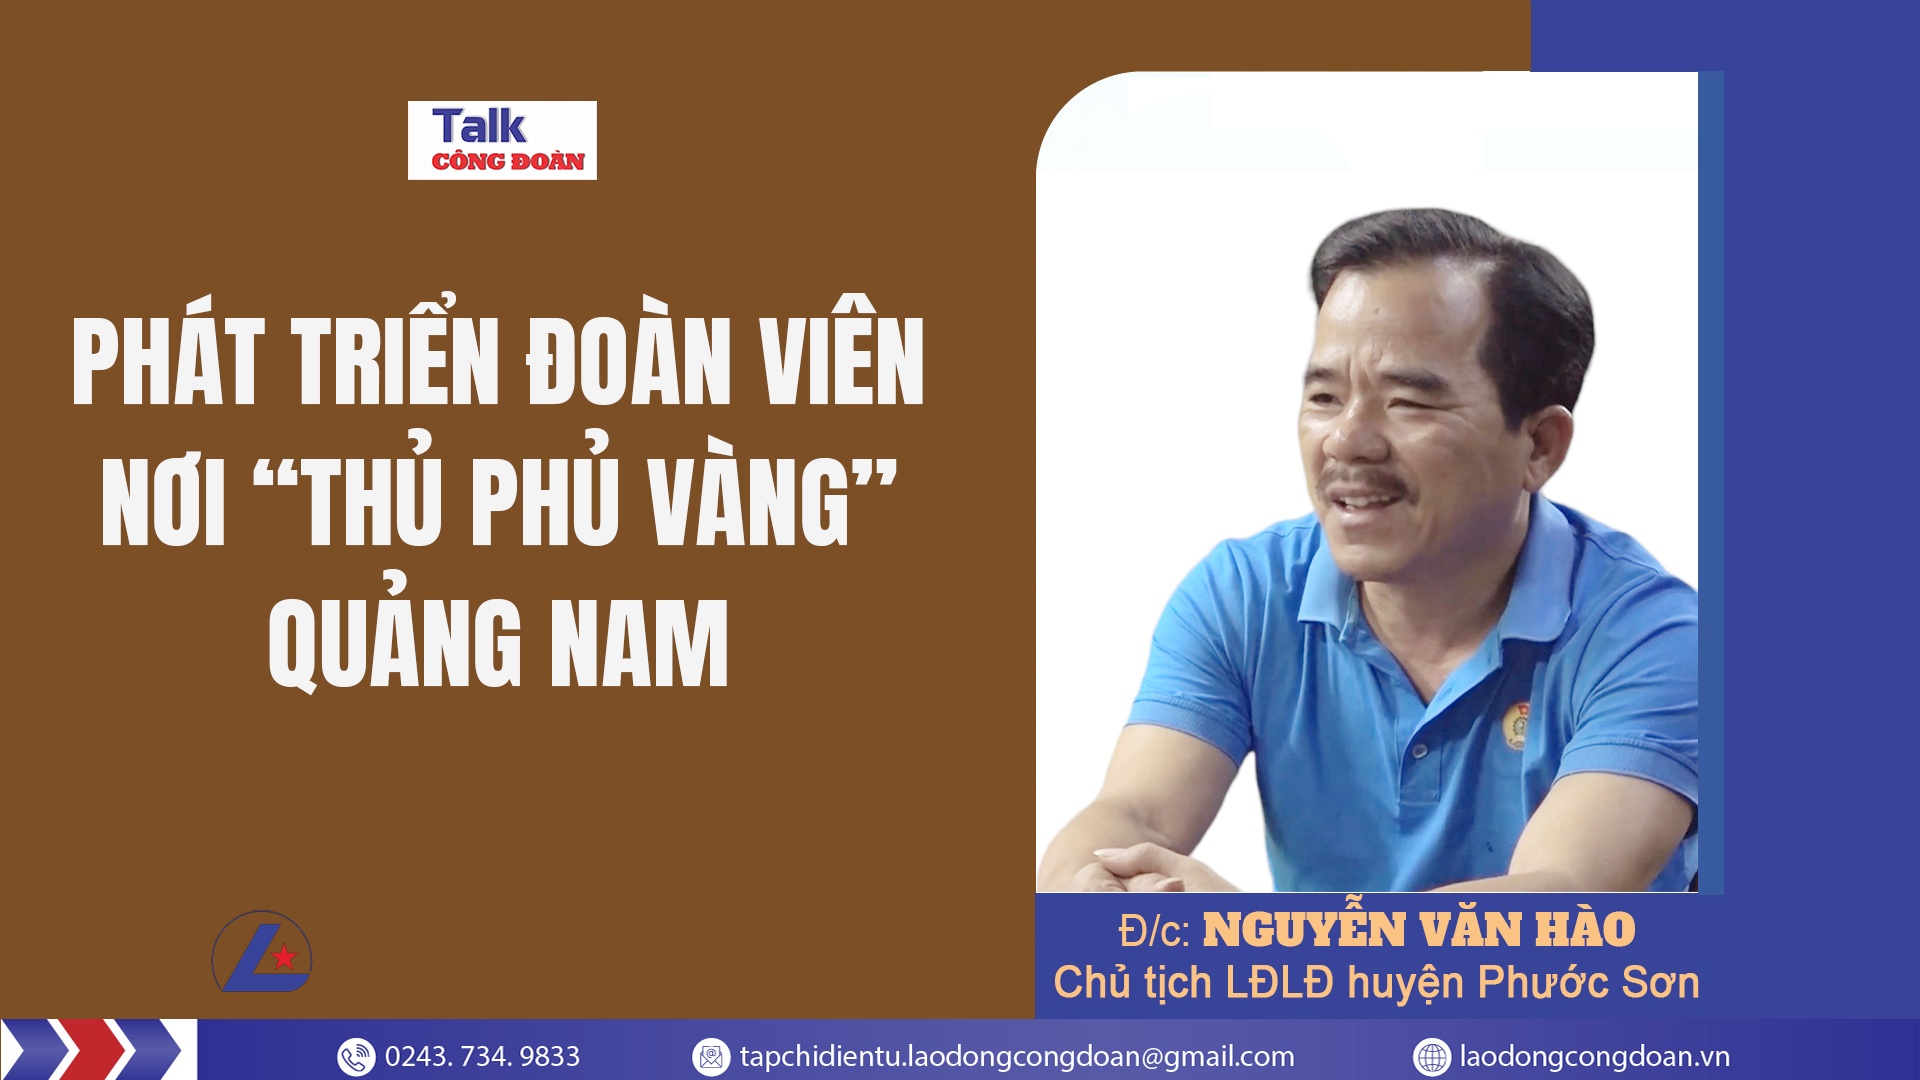 Talk Công đoàn: Phát triển đoàn viên nơi “thủ phủ vàng” Quảng Nam